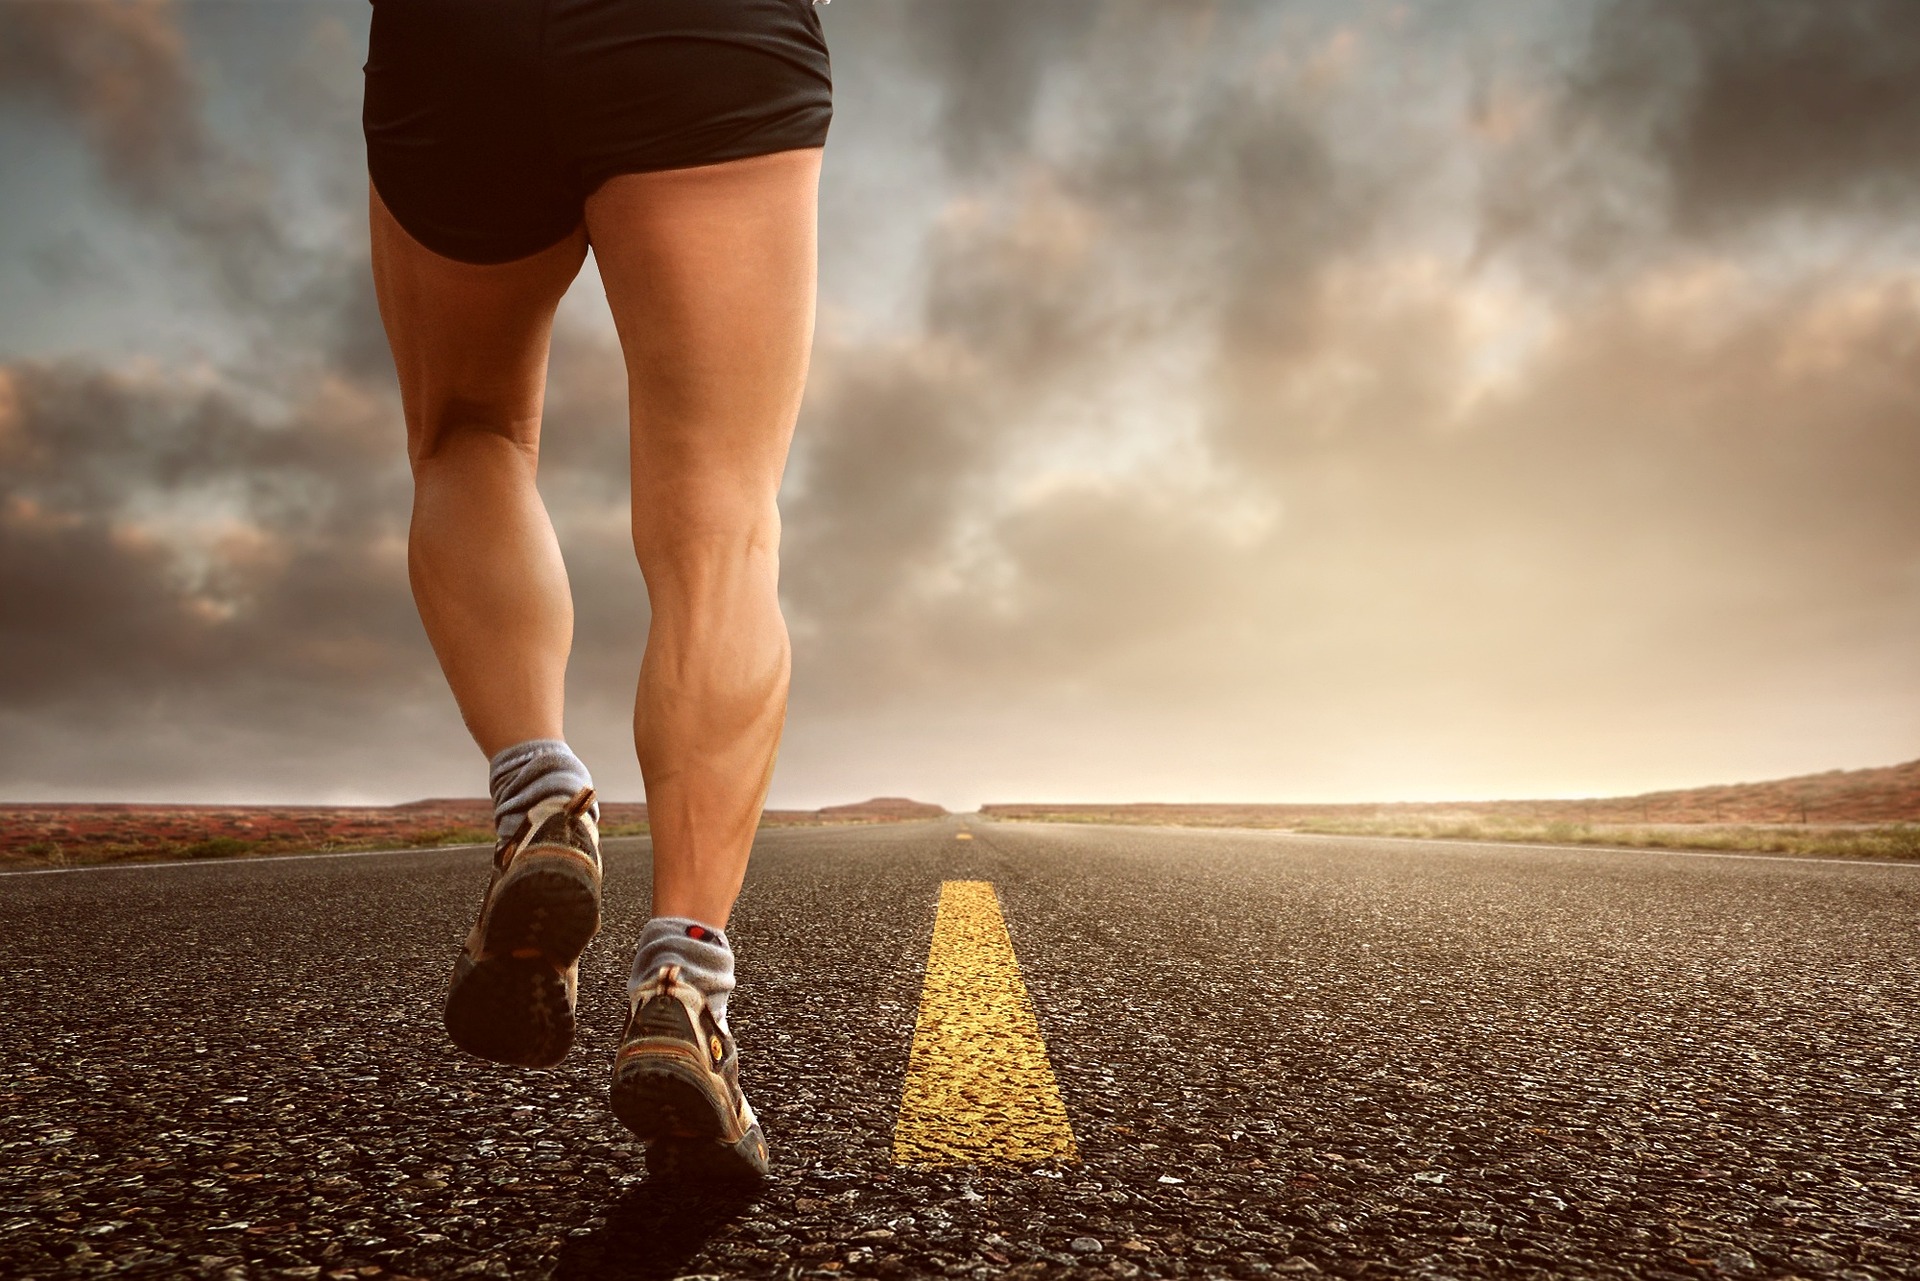 Chạy bộ rất tốt cho sức khỏe. (Ảnh: Pixabay)